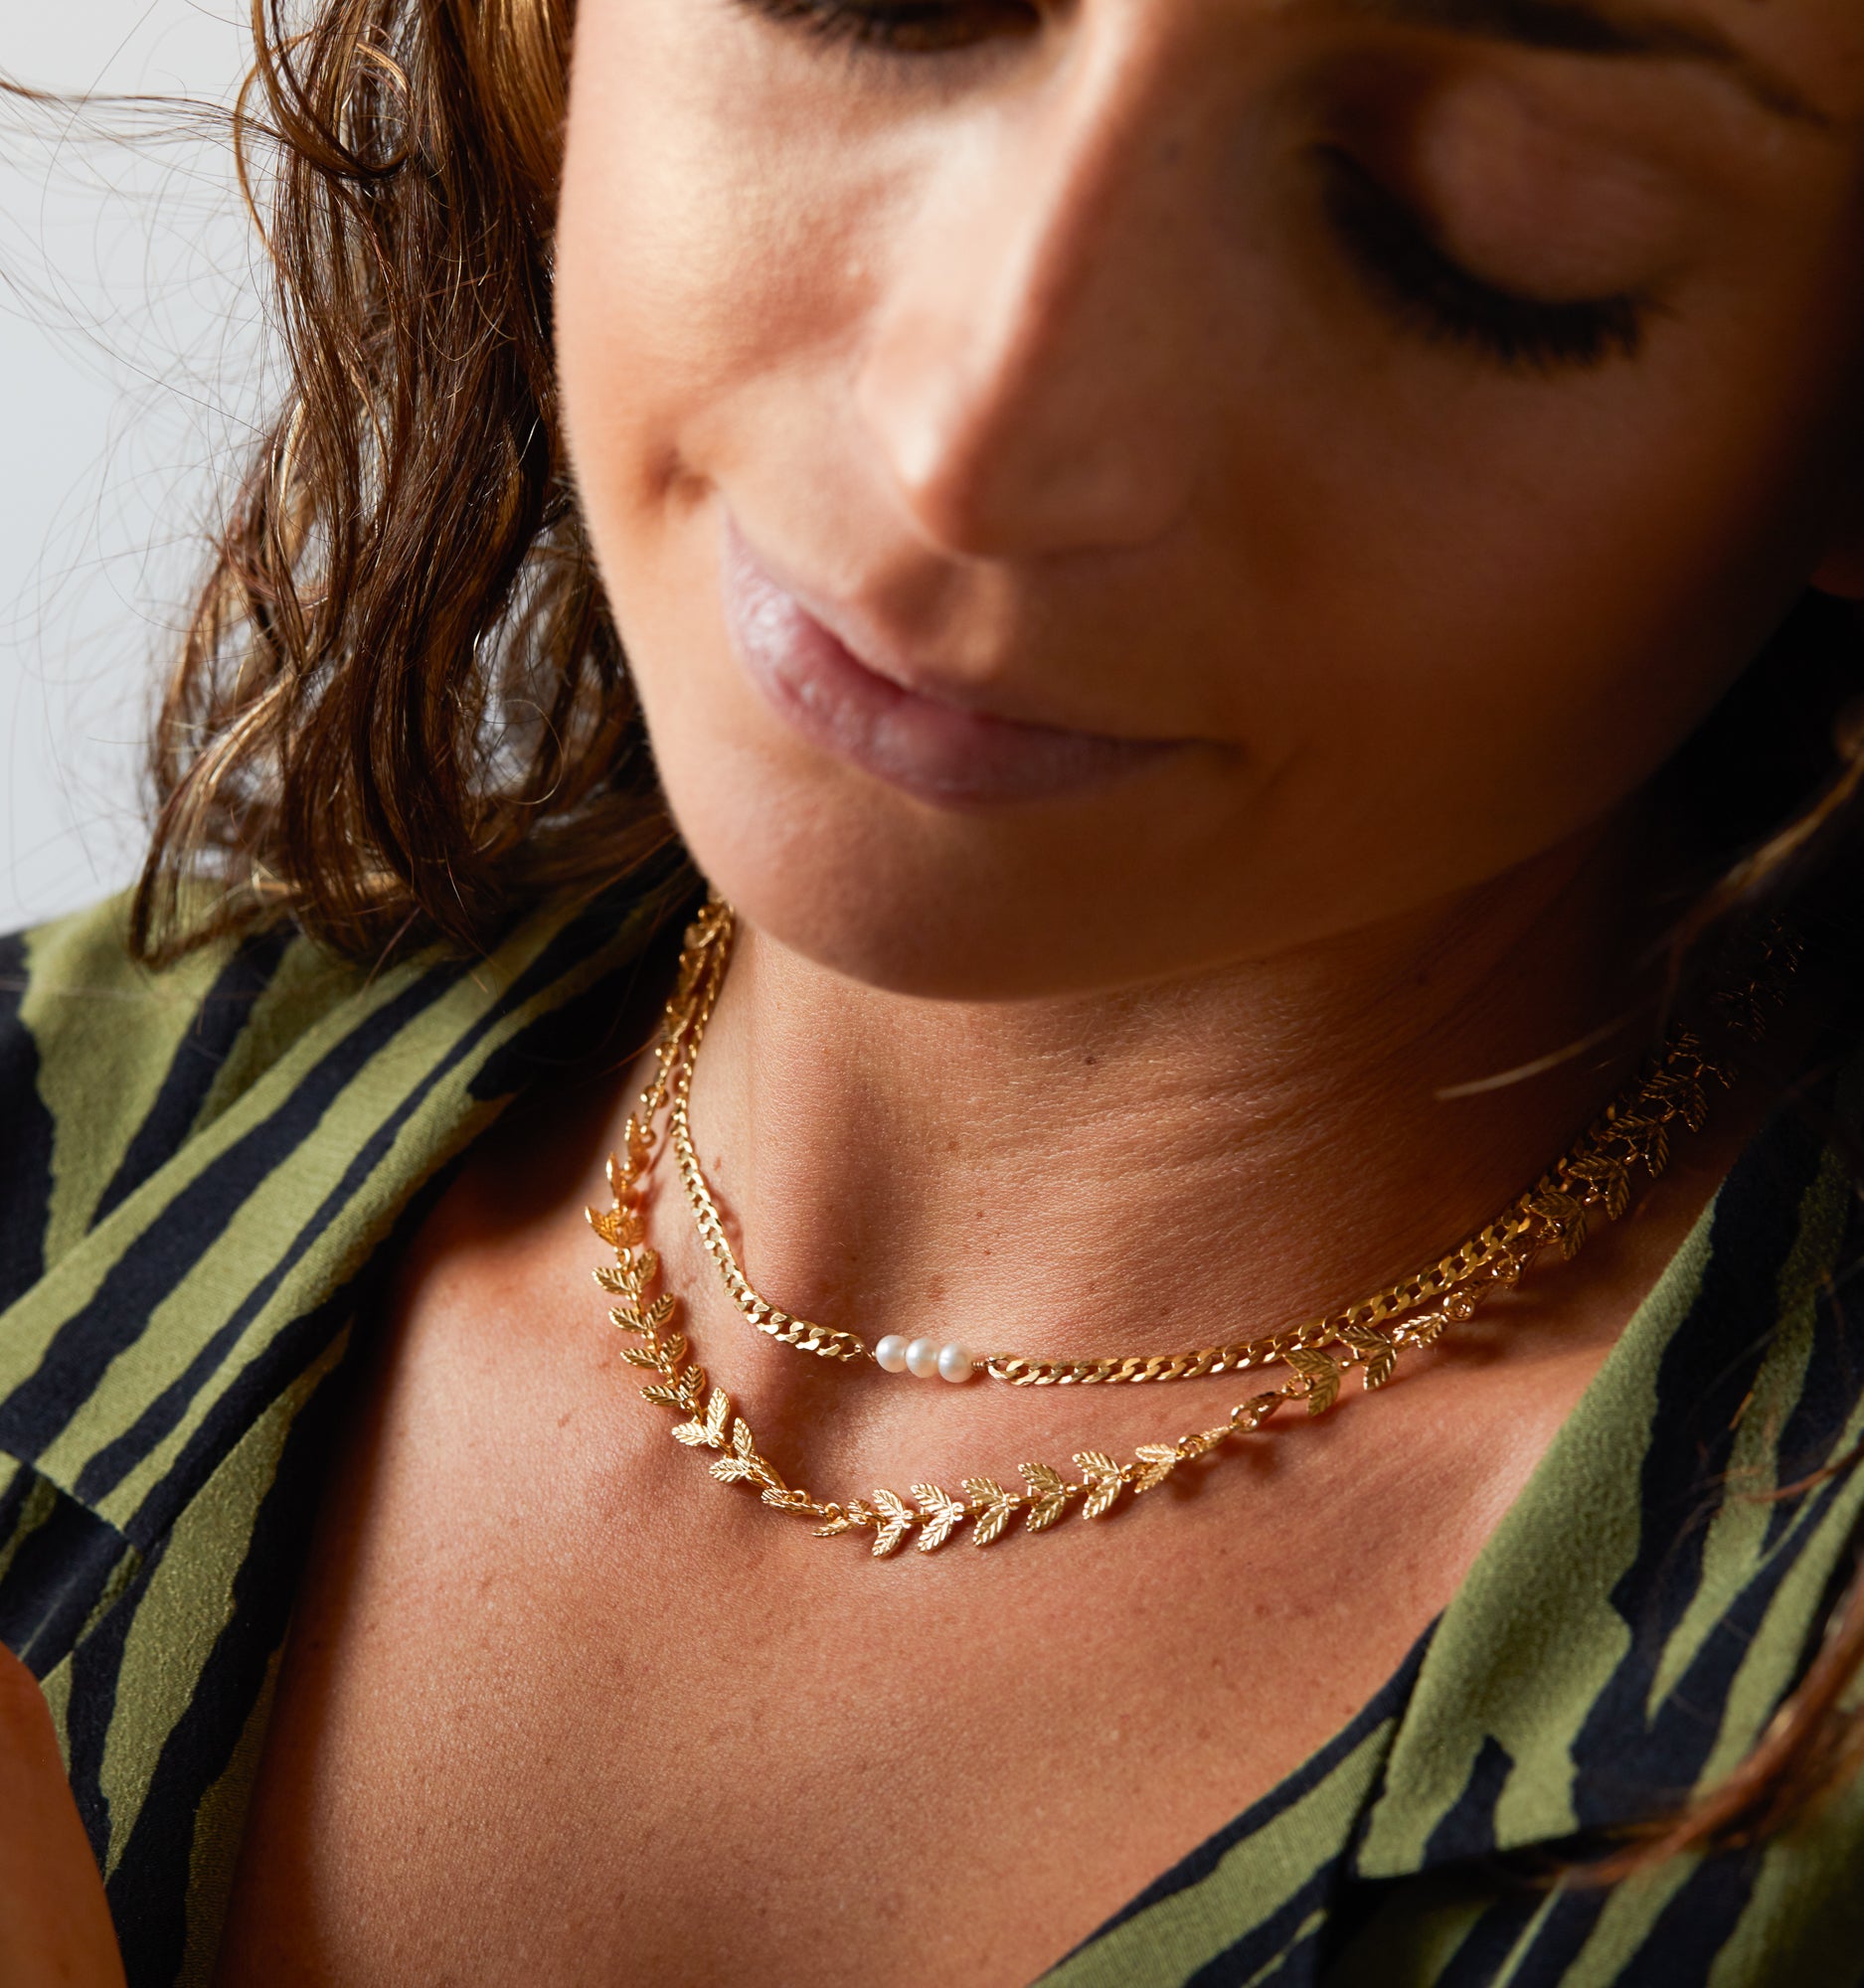 Laurel Chain Necklace